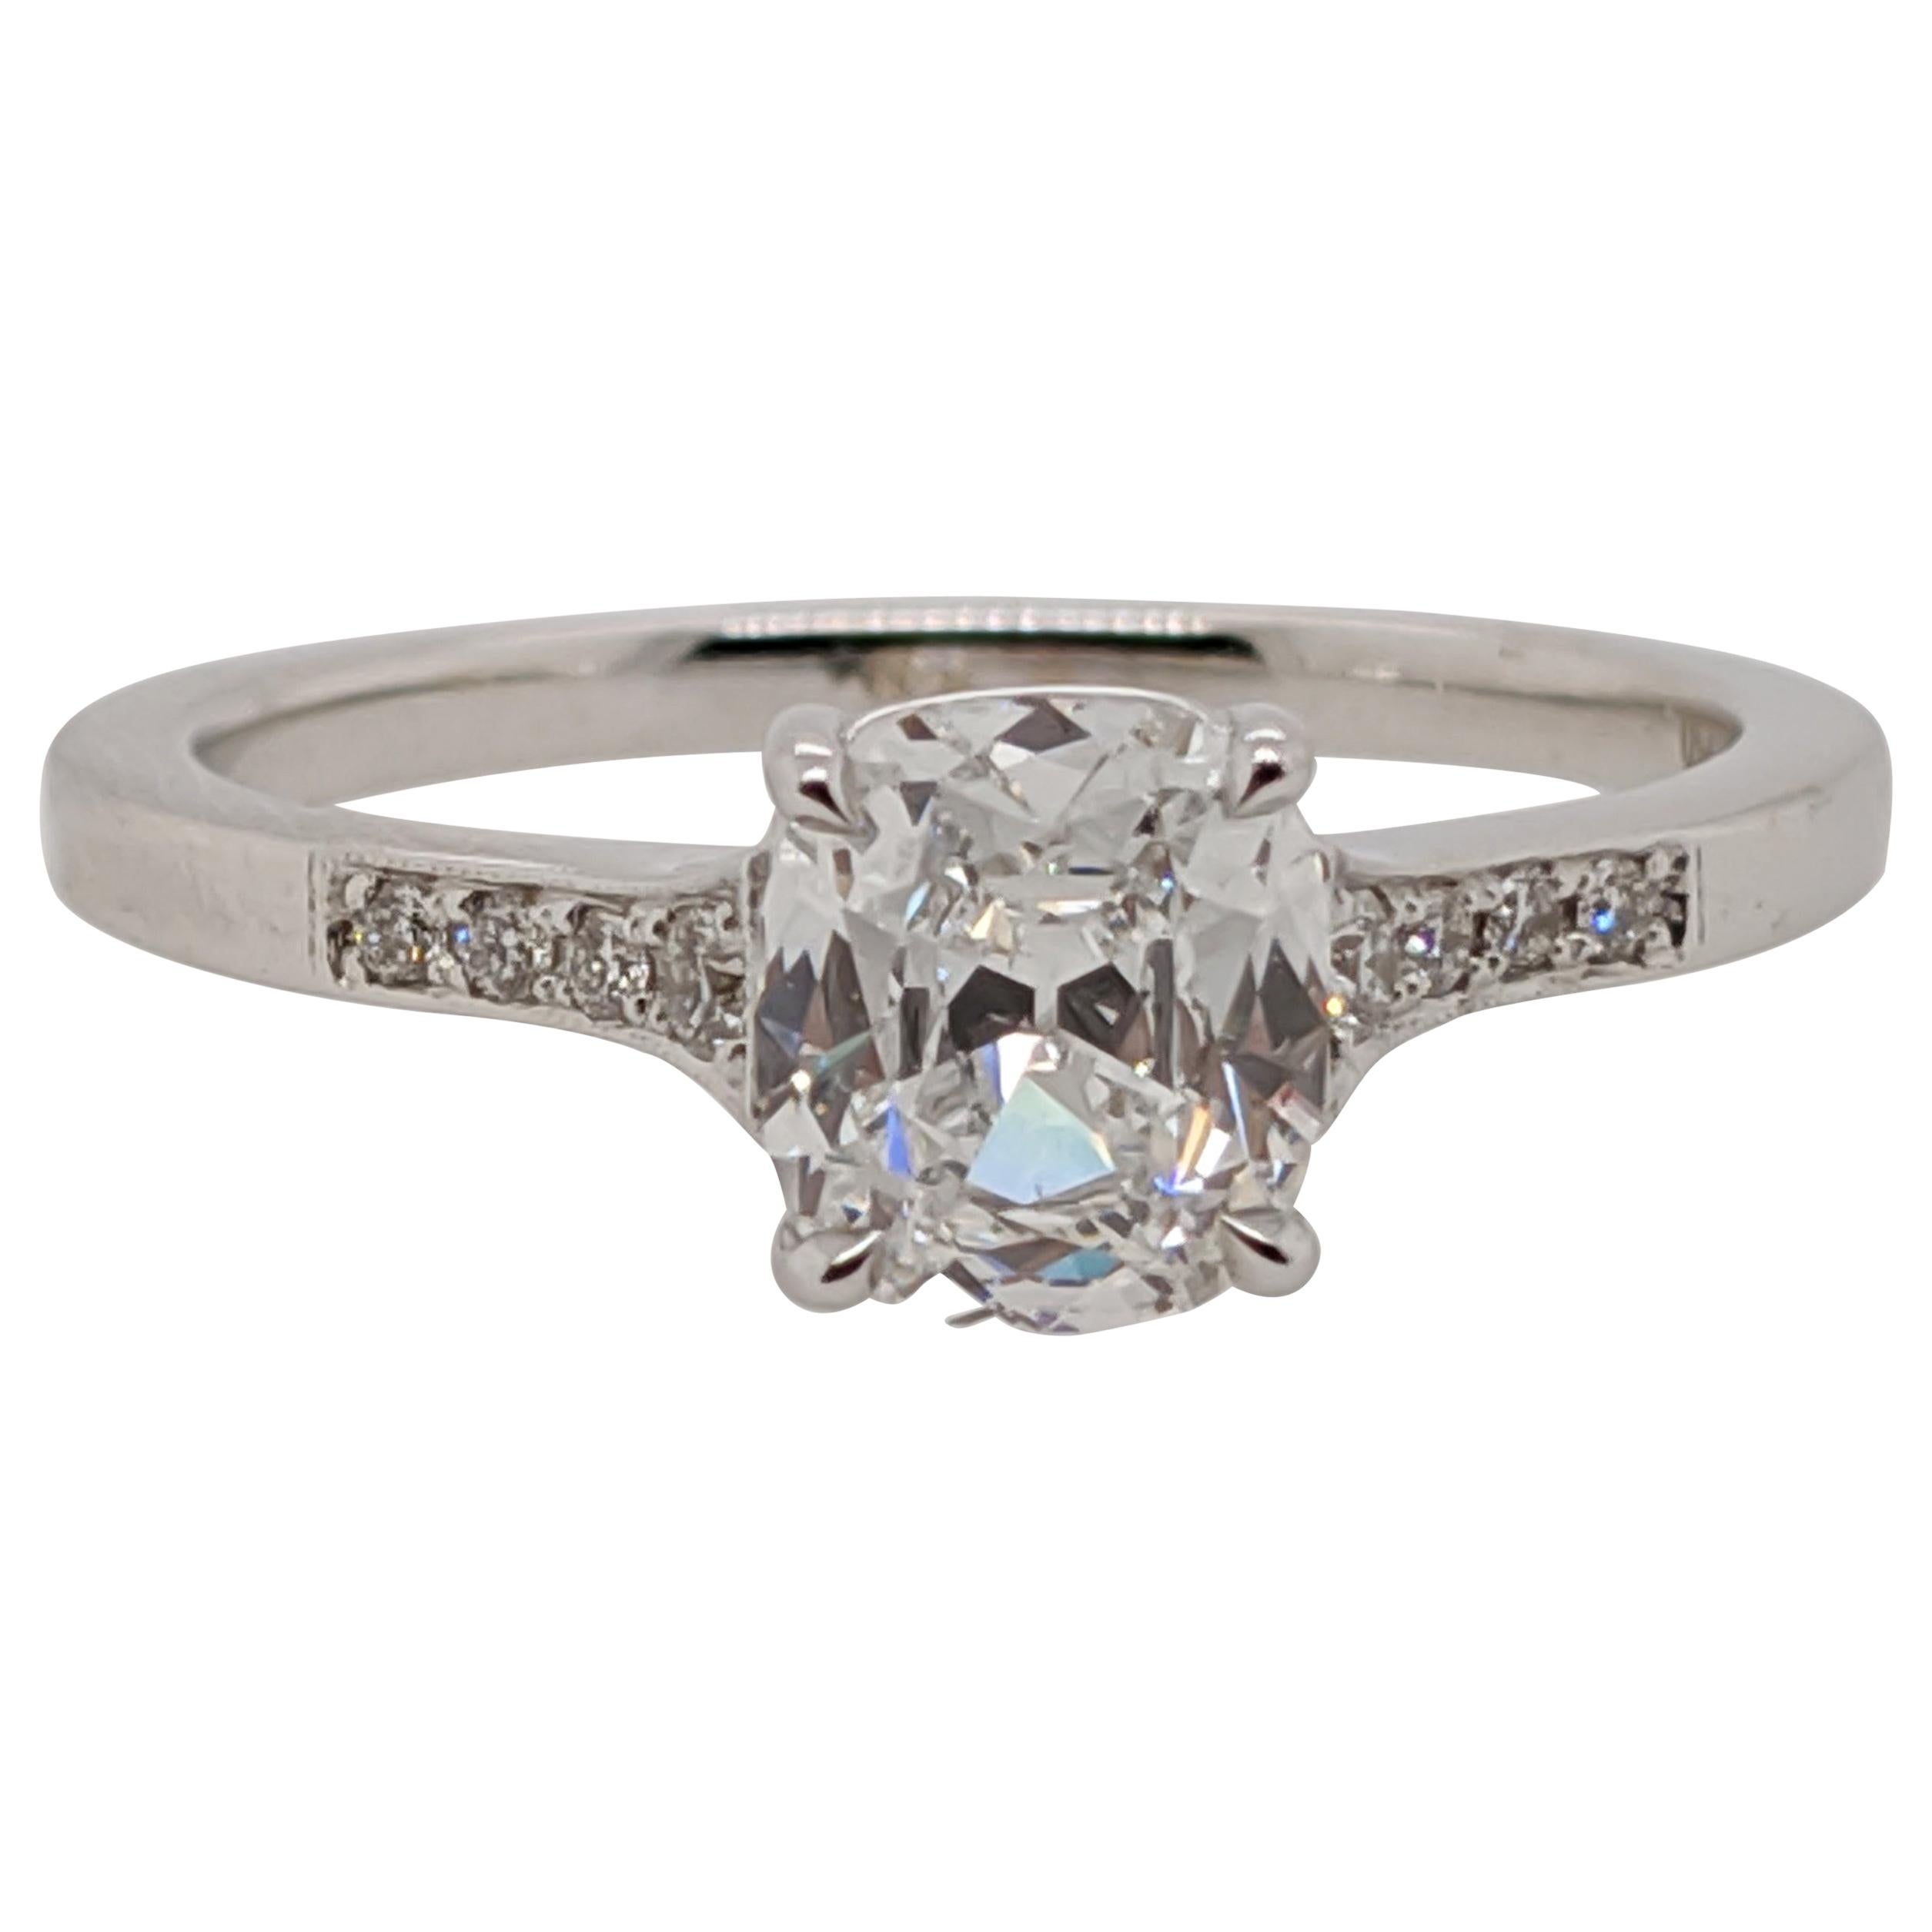 Antique Cut Cushion Diamond Engagement Ring in 18 Karat White Gold, GIA